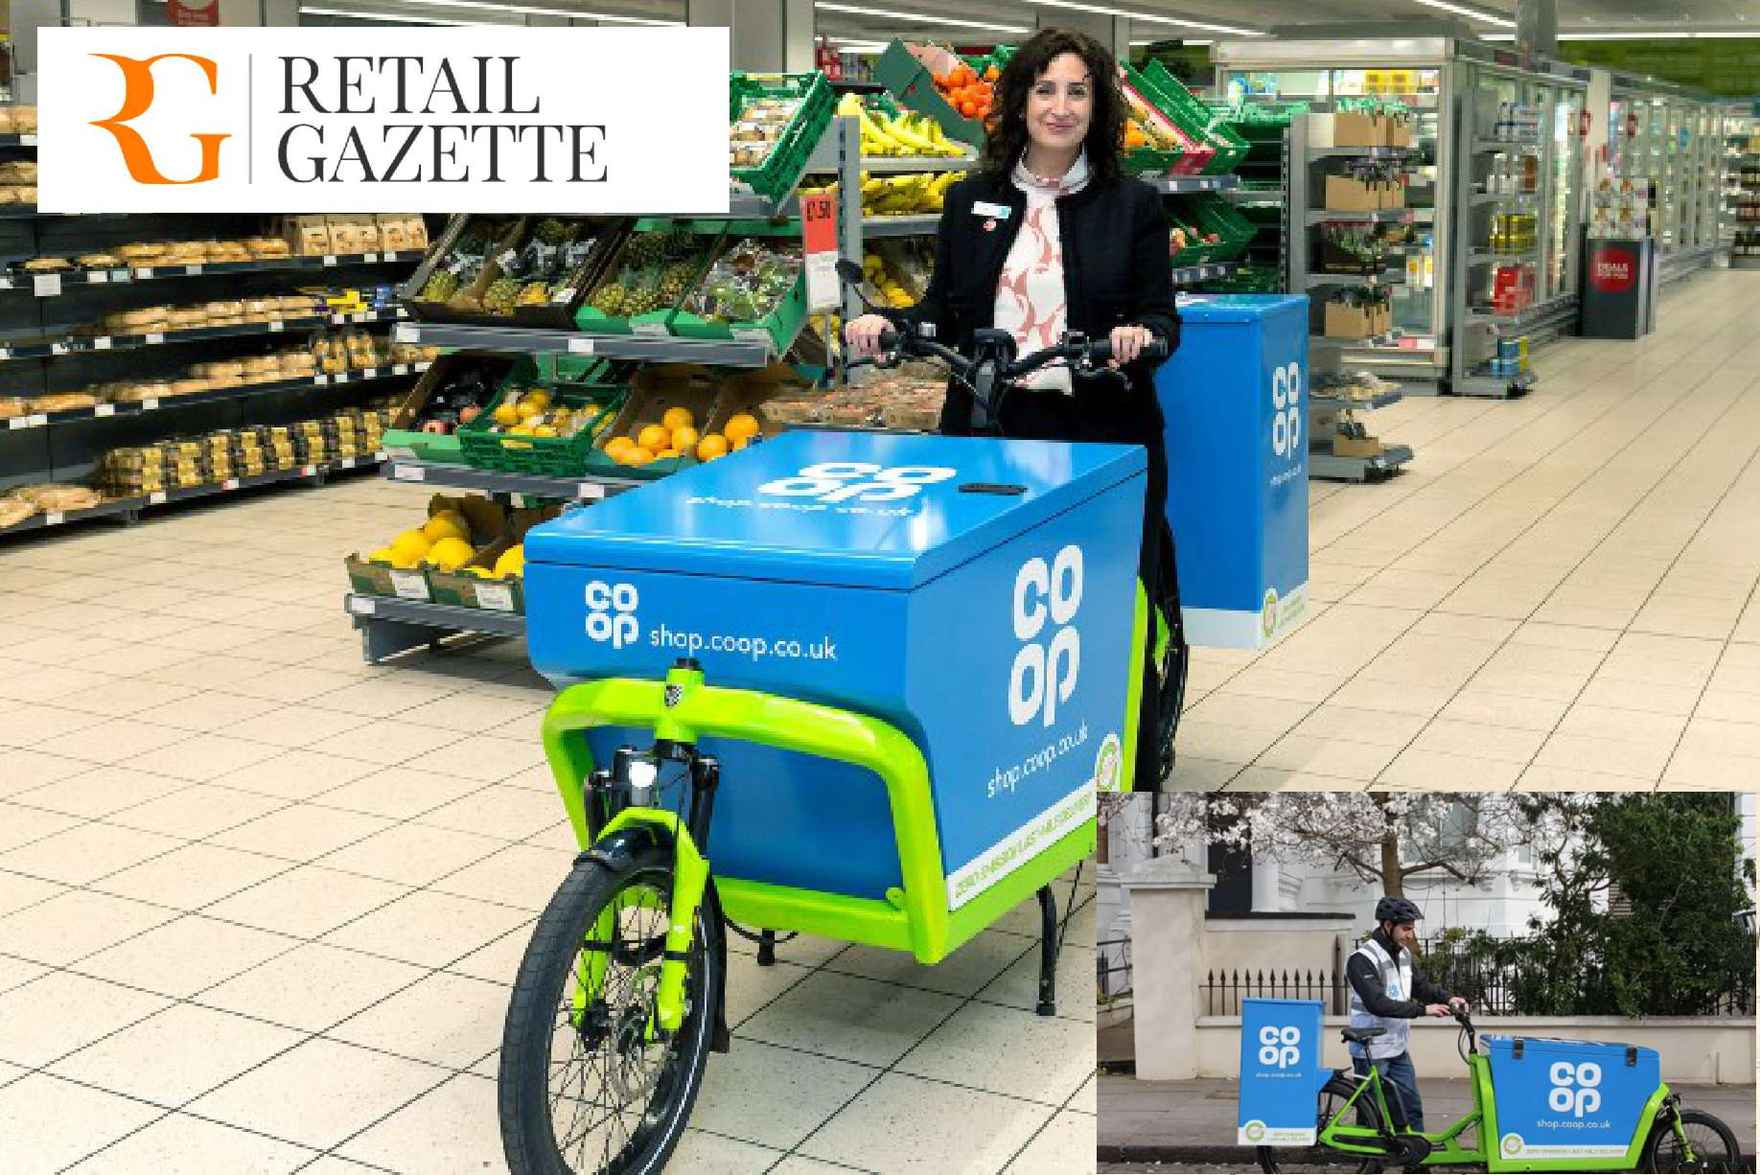 e-cargobike-zero emission Home-Delivery-Co-Op retail gazette1